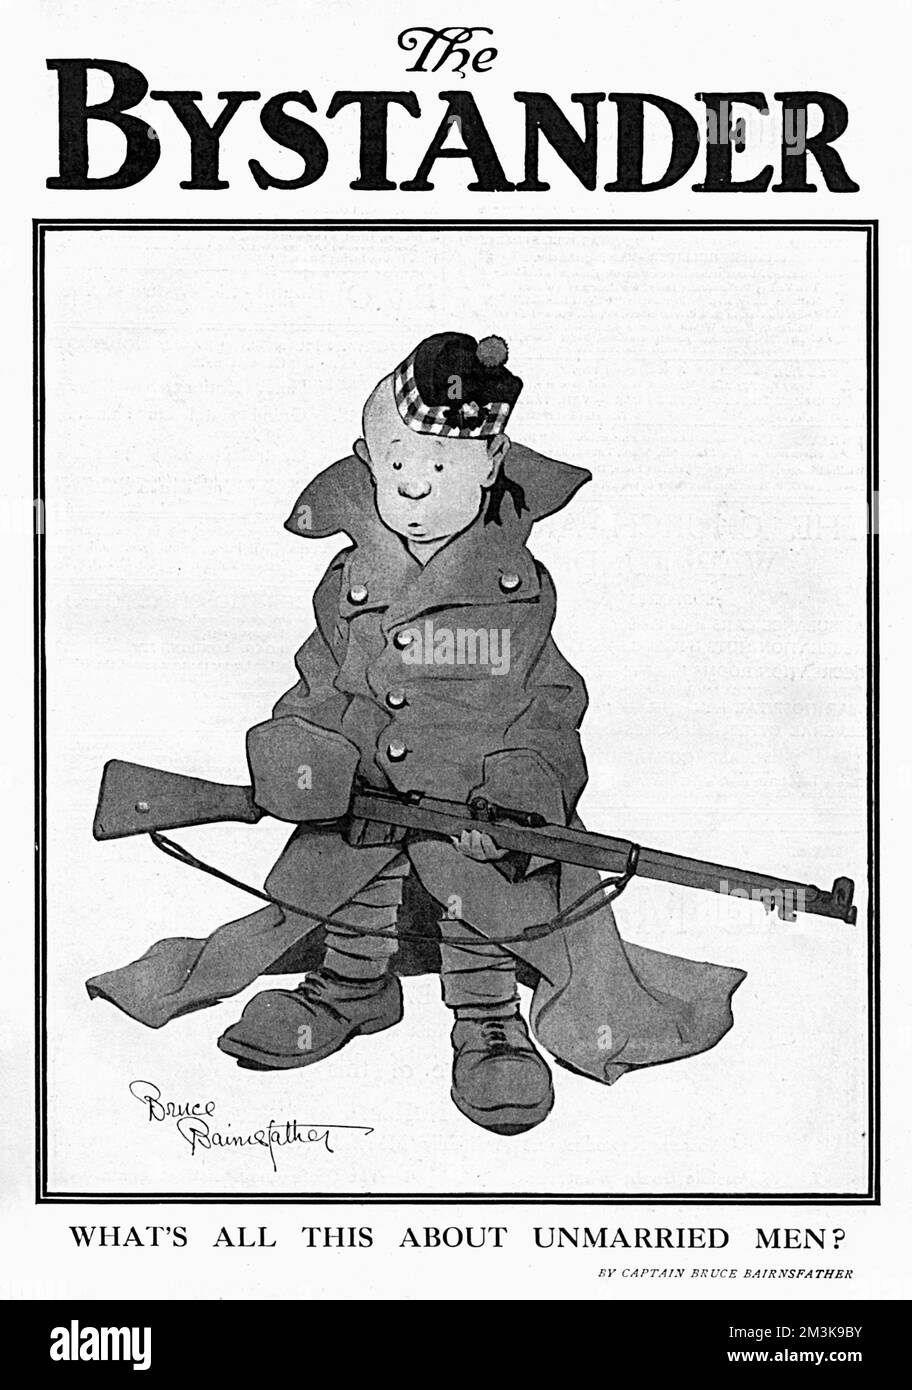 Humorvolle Illustration eines extrem jungen Soldaten, ein Kommentar zur Anzahl der minderjährigen Rekruten, die sich während des Ersten Weltkriegs anschlossen Minderjährige waren ziemlich alltäglich, und wenn sie größer als der Durchschnitt sind, würden die meisten Rekrutierungsoffiziere ein Auge zudrücken. 1916 Stockfoto